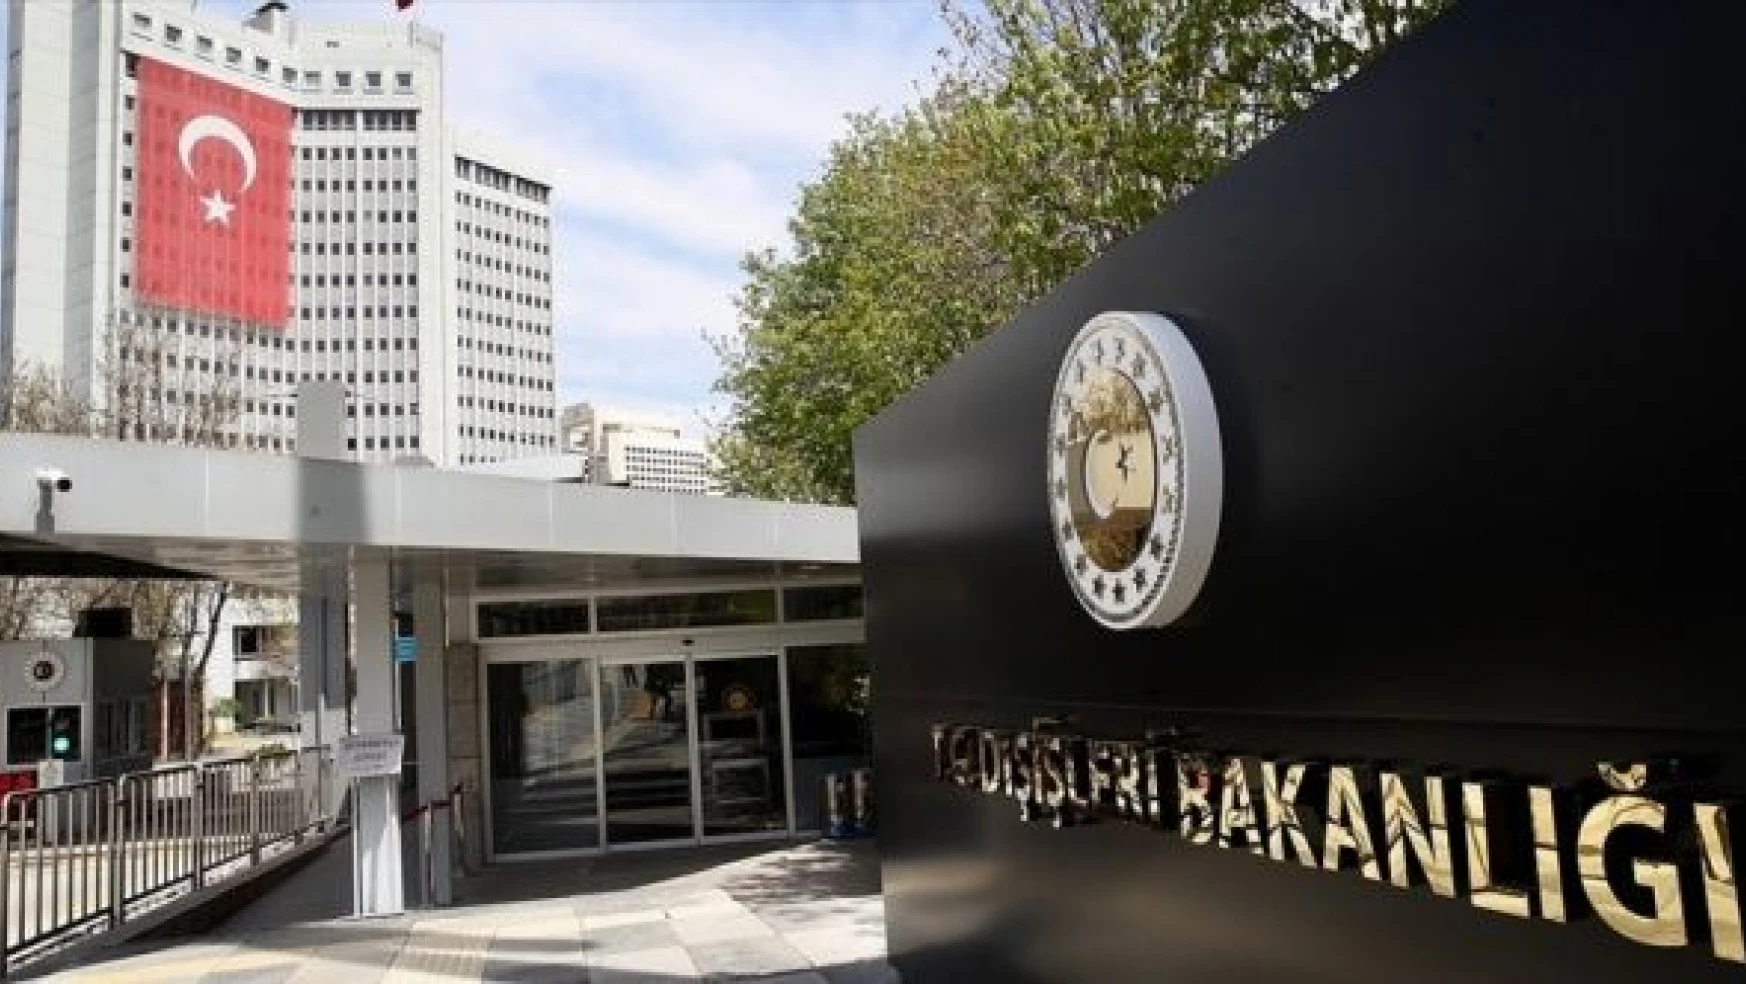 İsveç'in Ankara Büyükelçisi, Dışişleri Bakanlığına çağrıldı